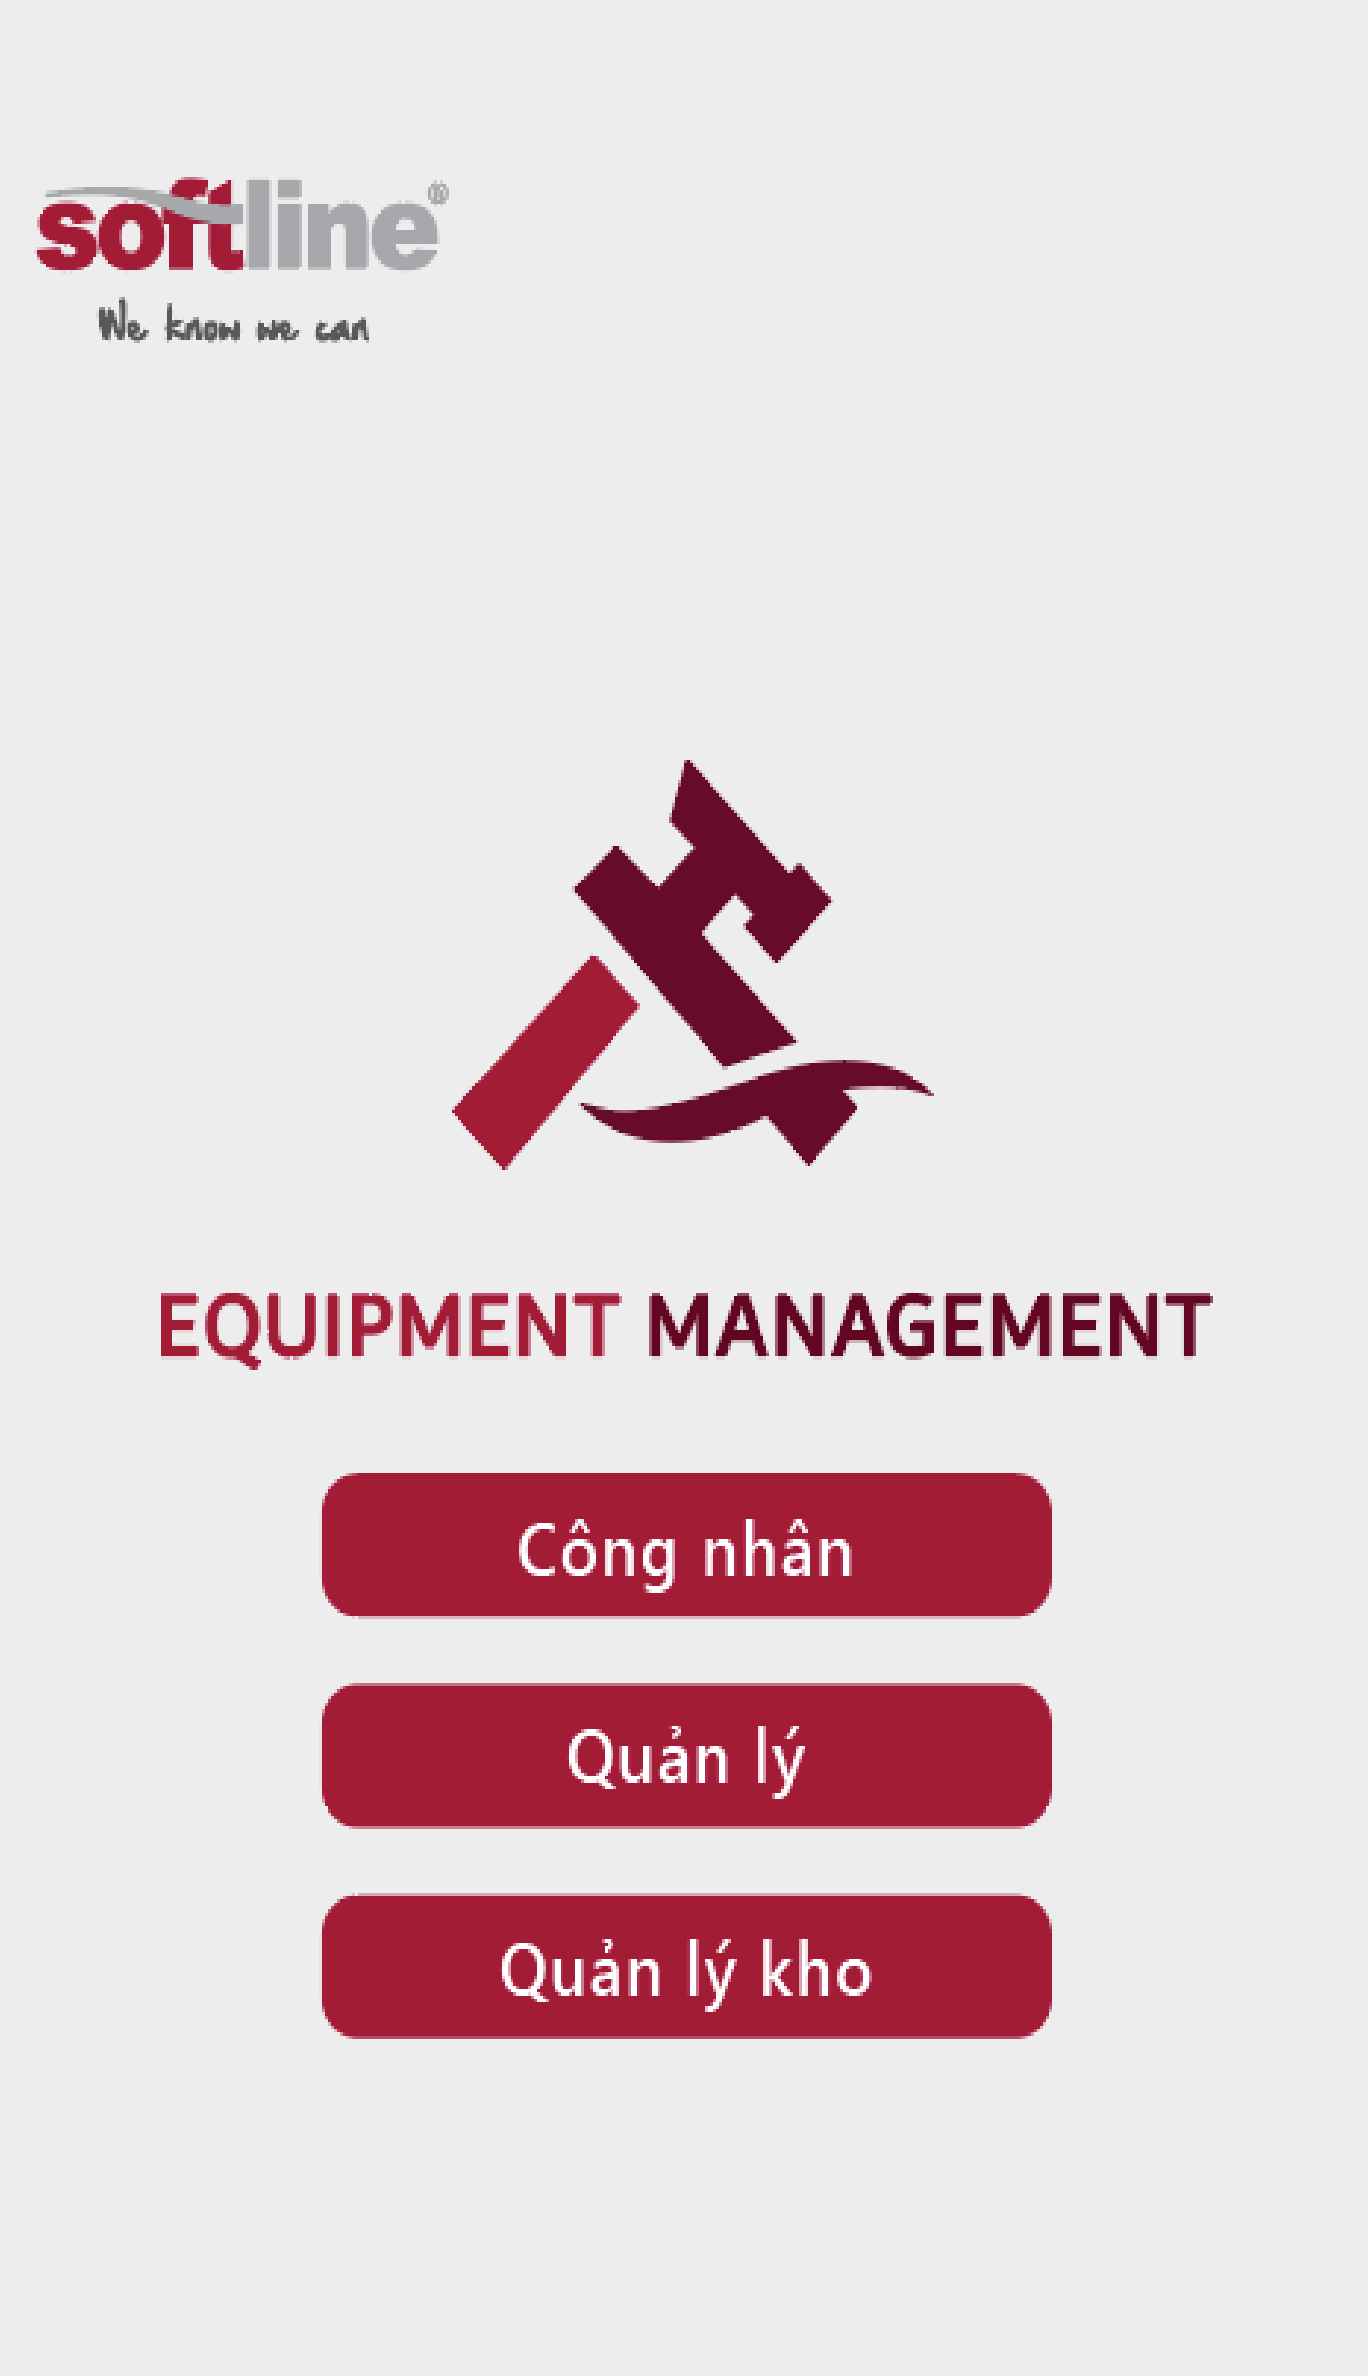 Equipment Management